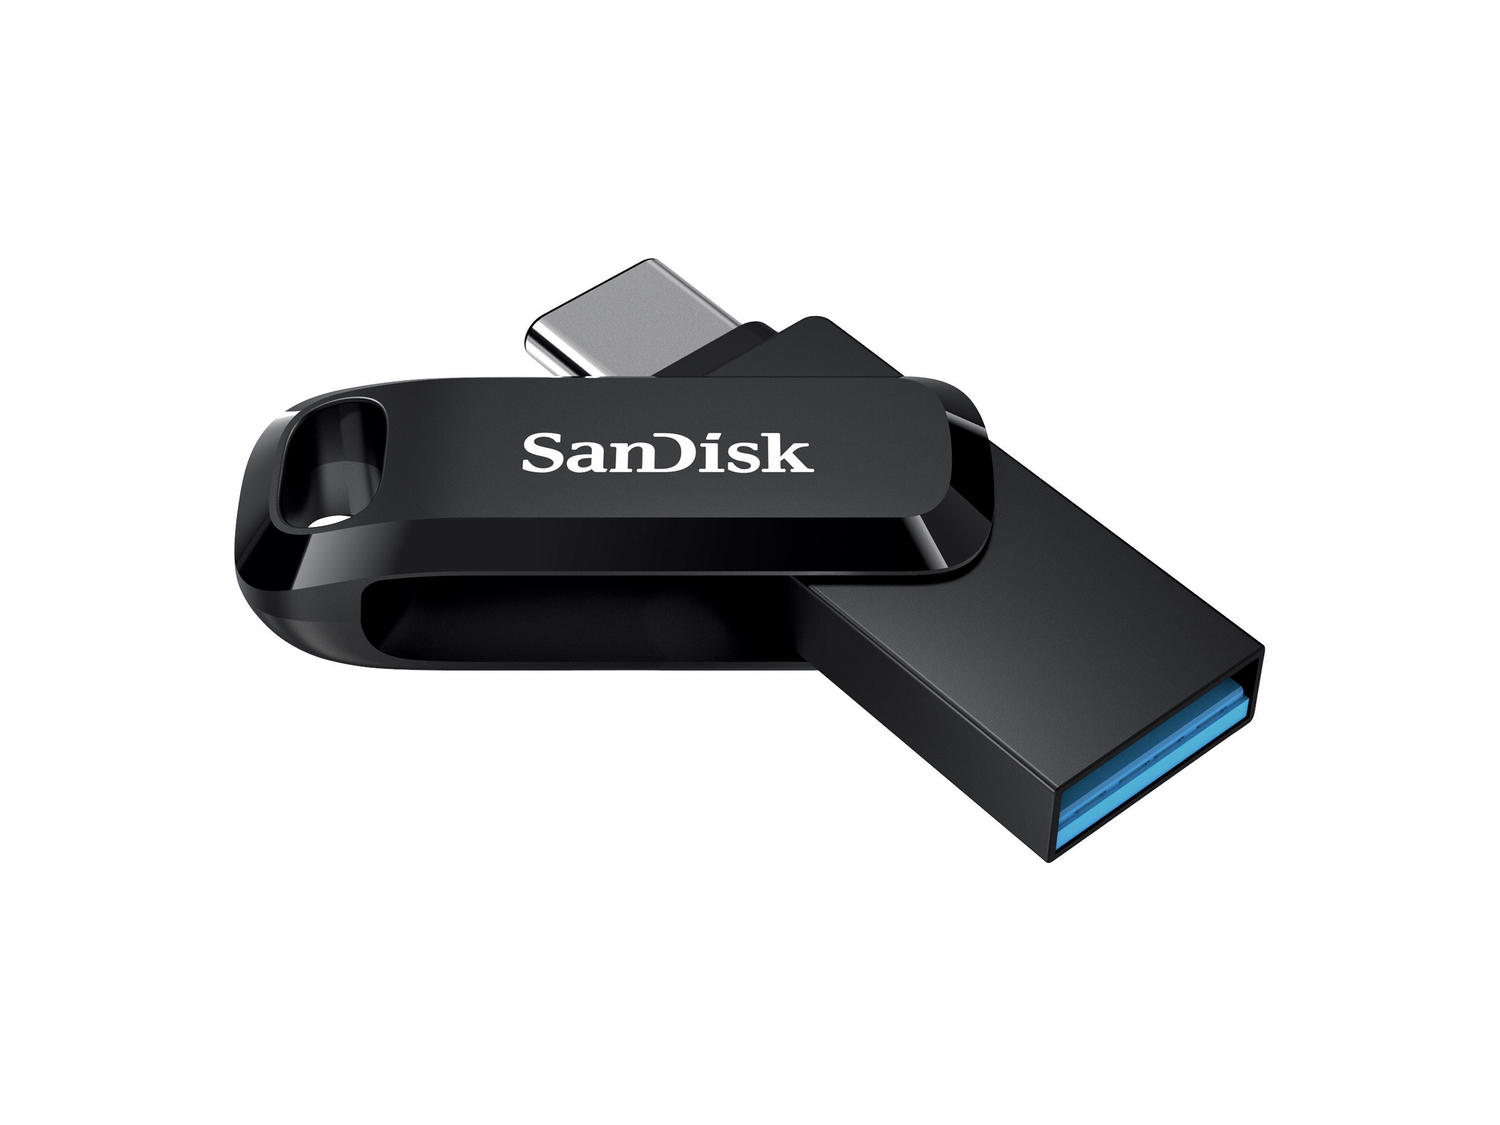 Scheda di memoria microSD o pendrive SanDisk , prezzo 8.99 €  
32 GB